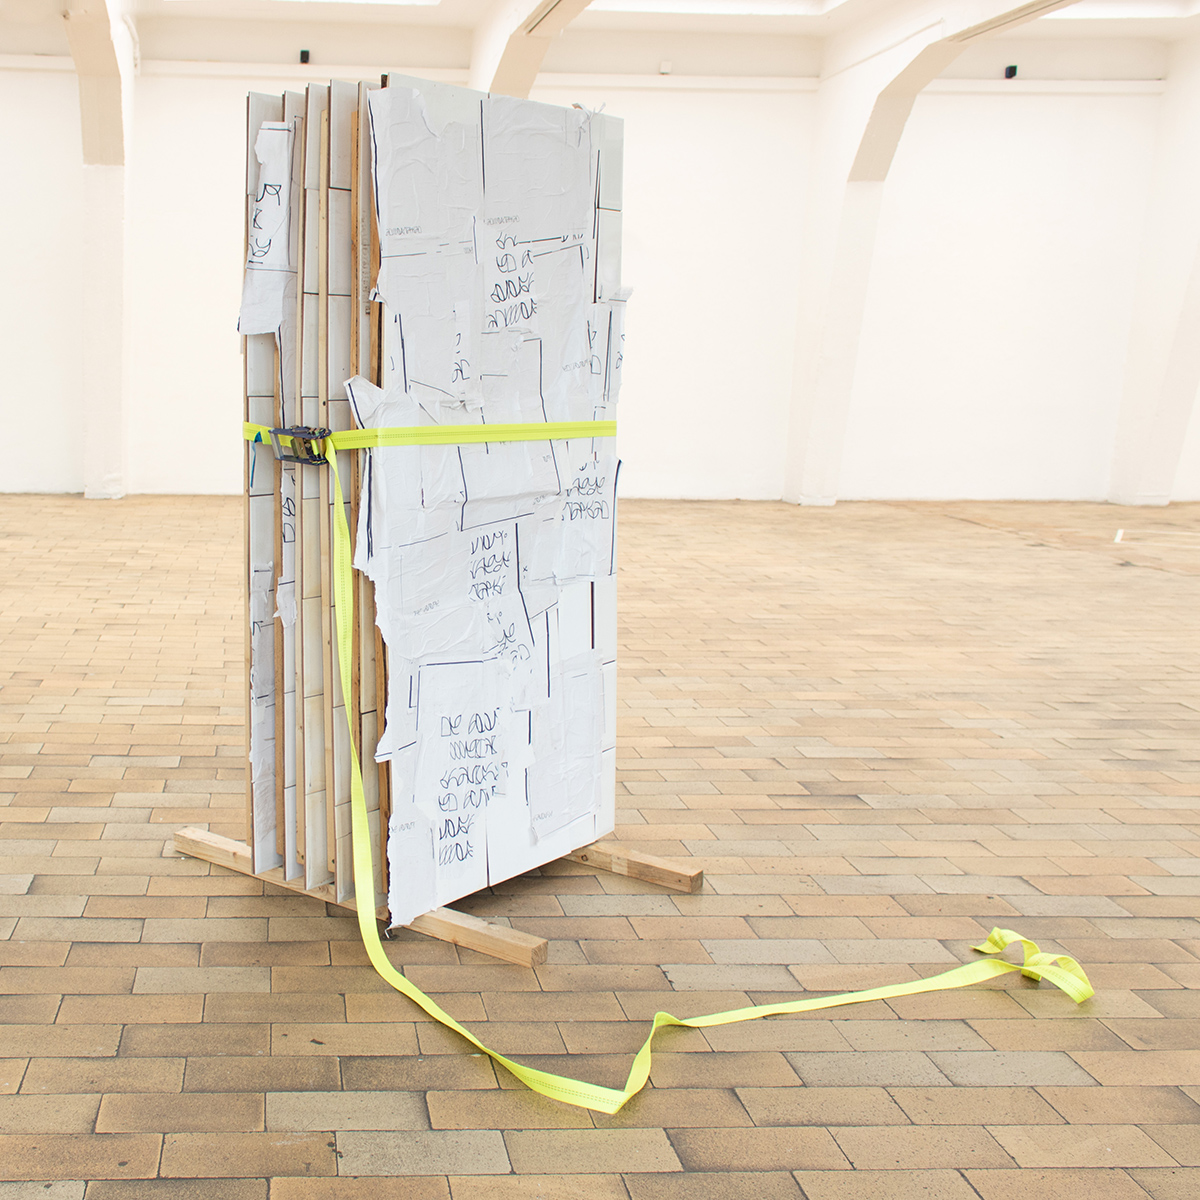 News of Reuter Bausch Art Gallery Julien Hbsch | Progress at TUFA, Trier